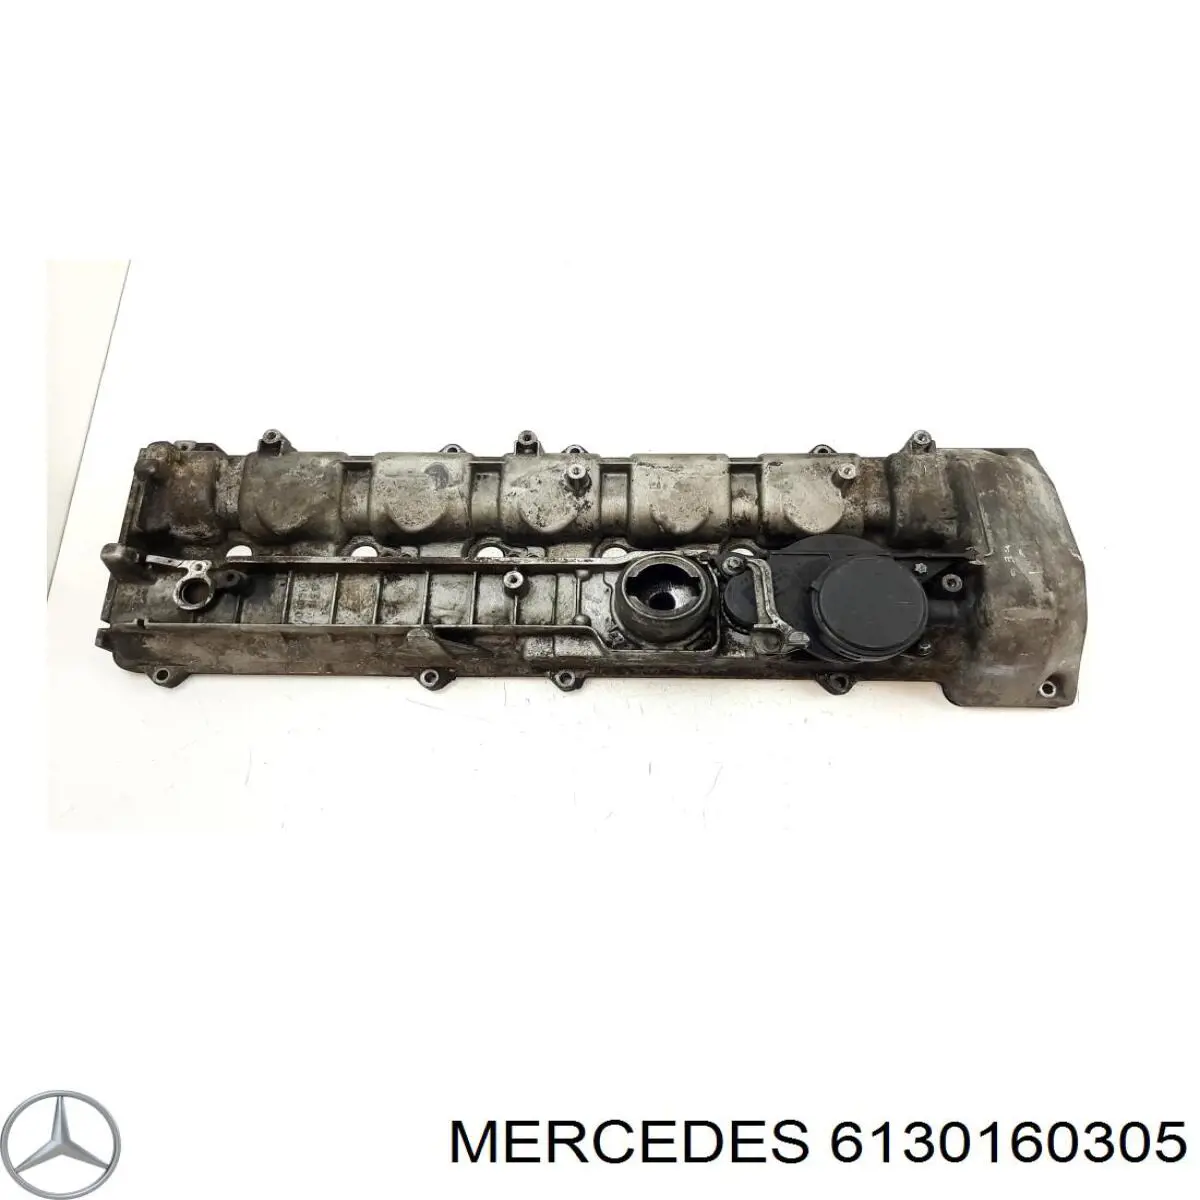 Tampa de válvulas para Mercedes S (W220)